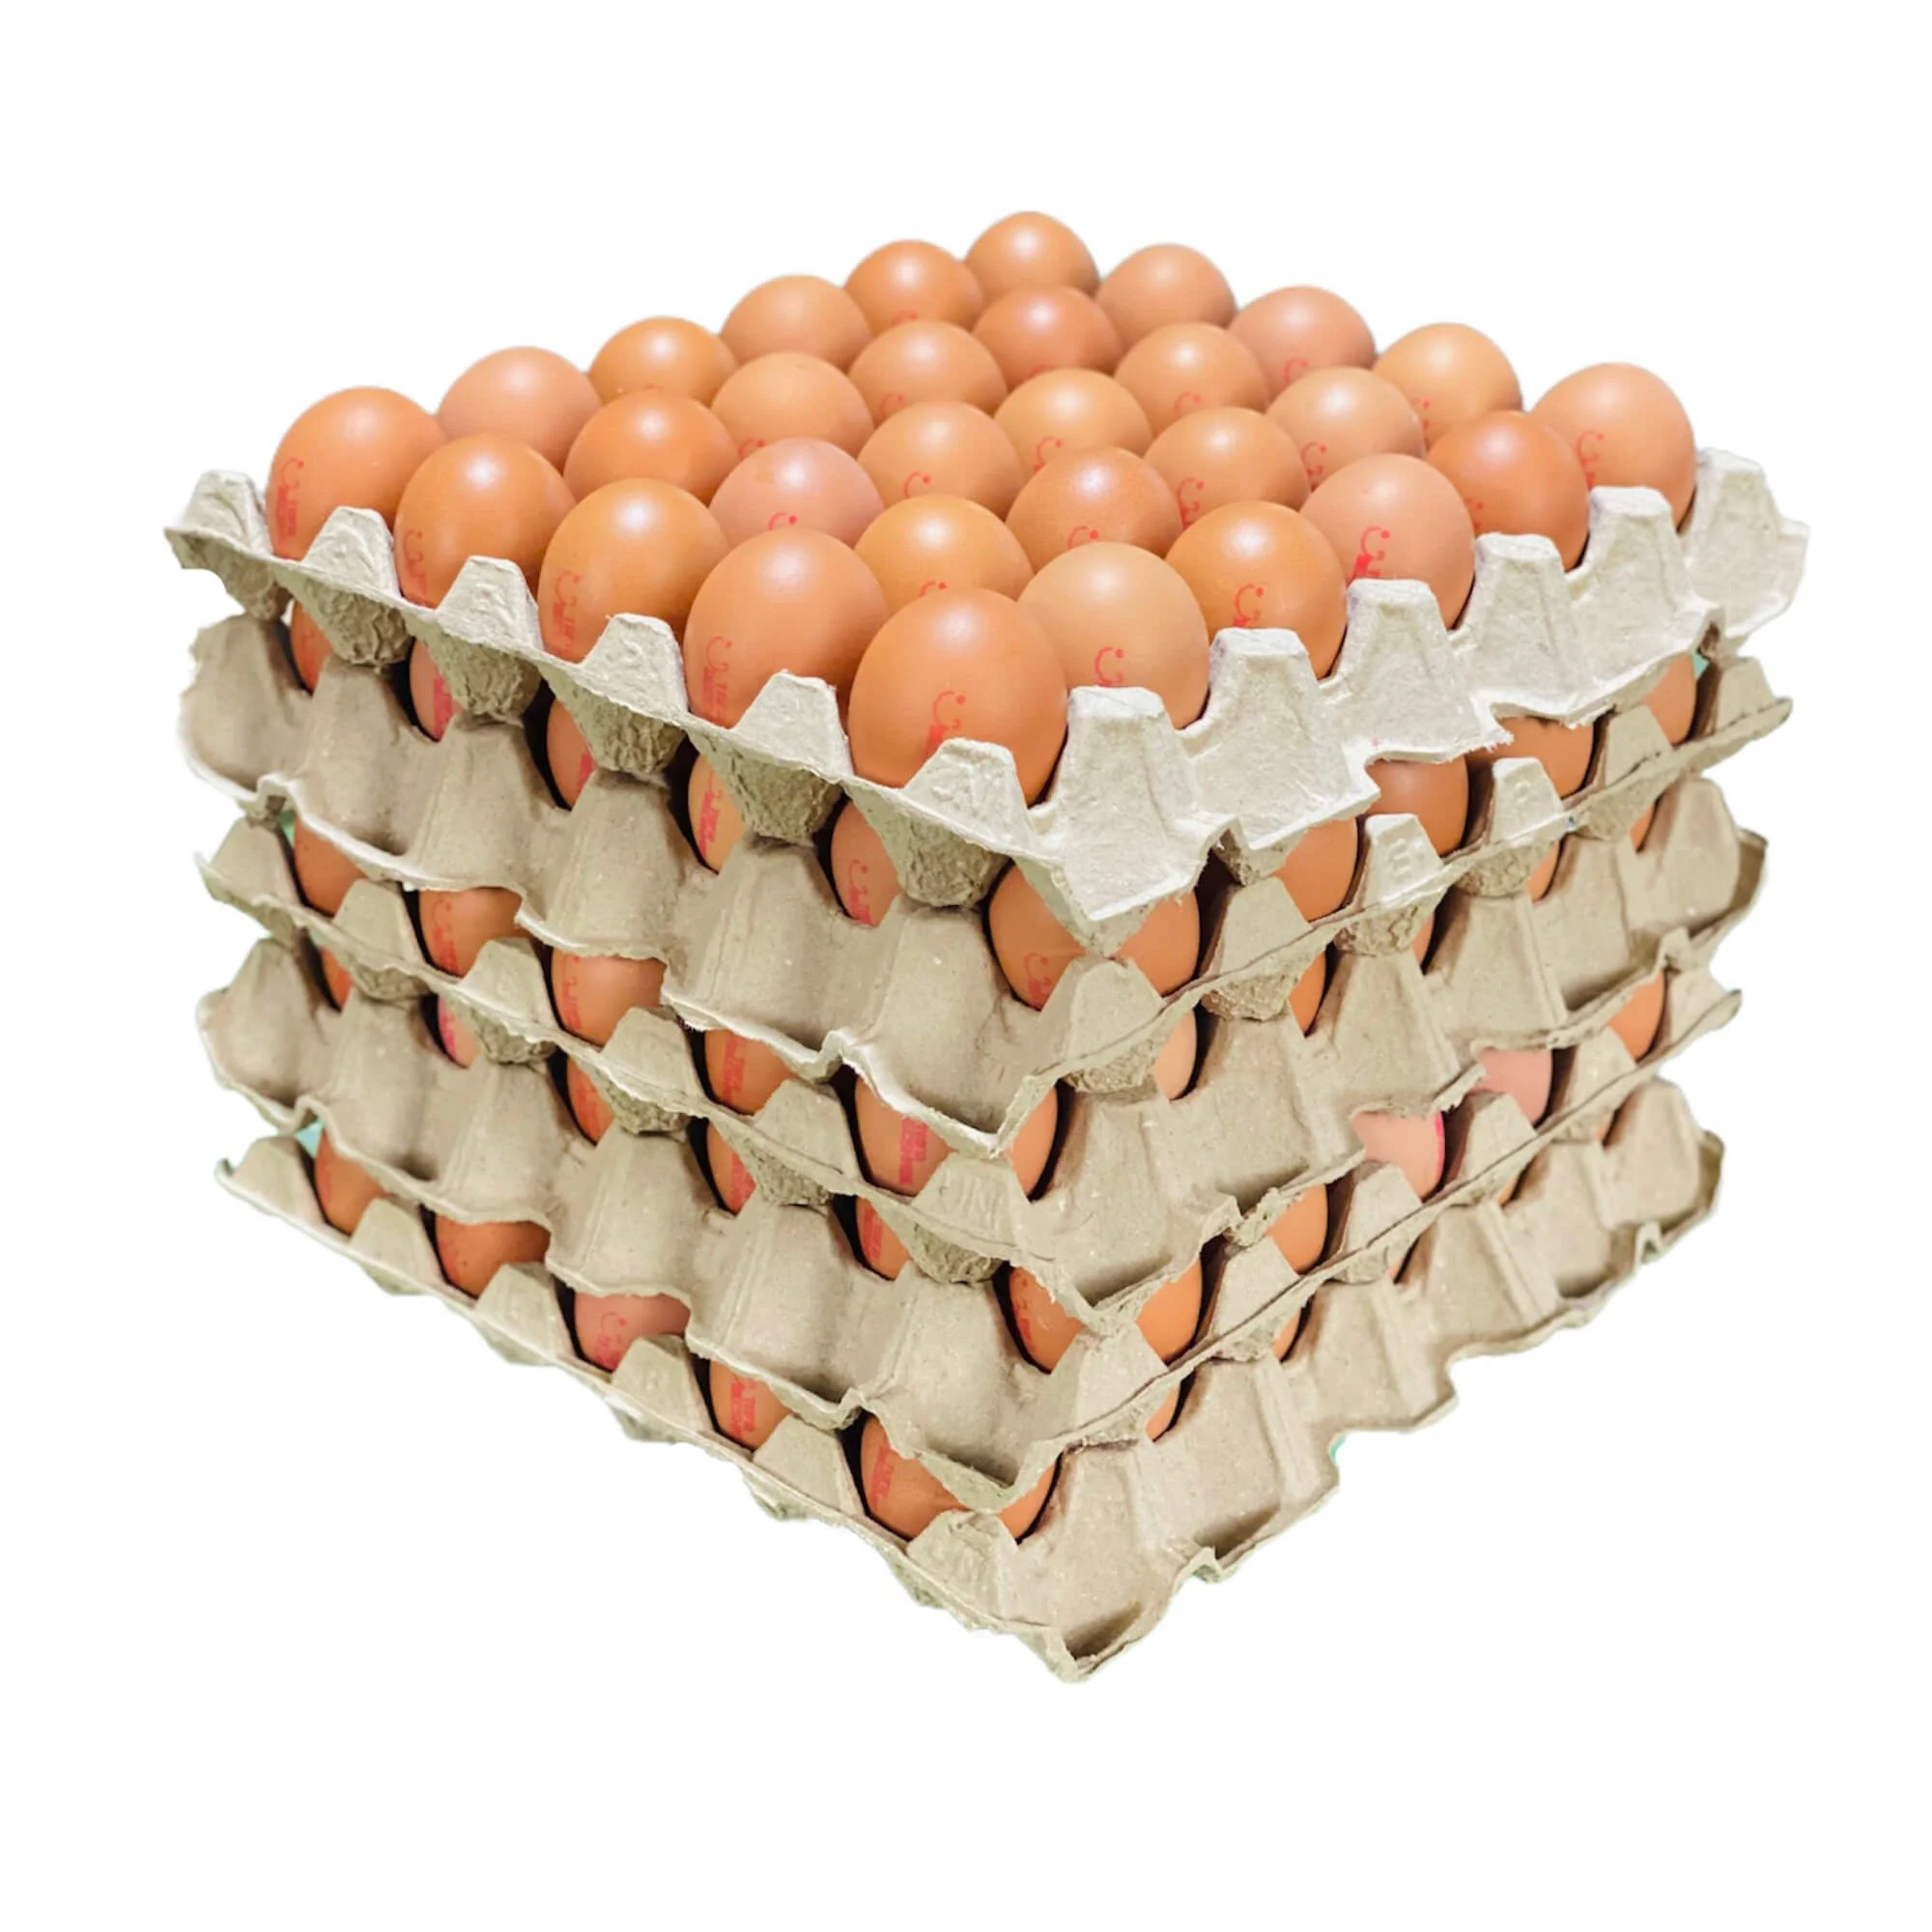 Trứng gà chất lượng để xuất khẩu